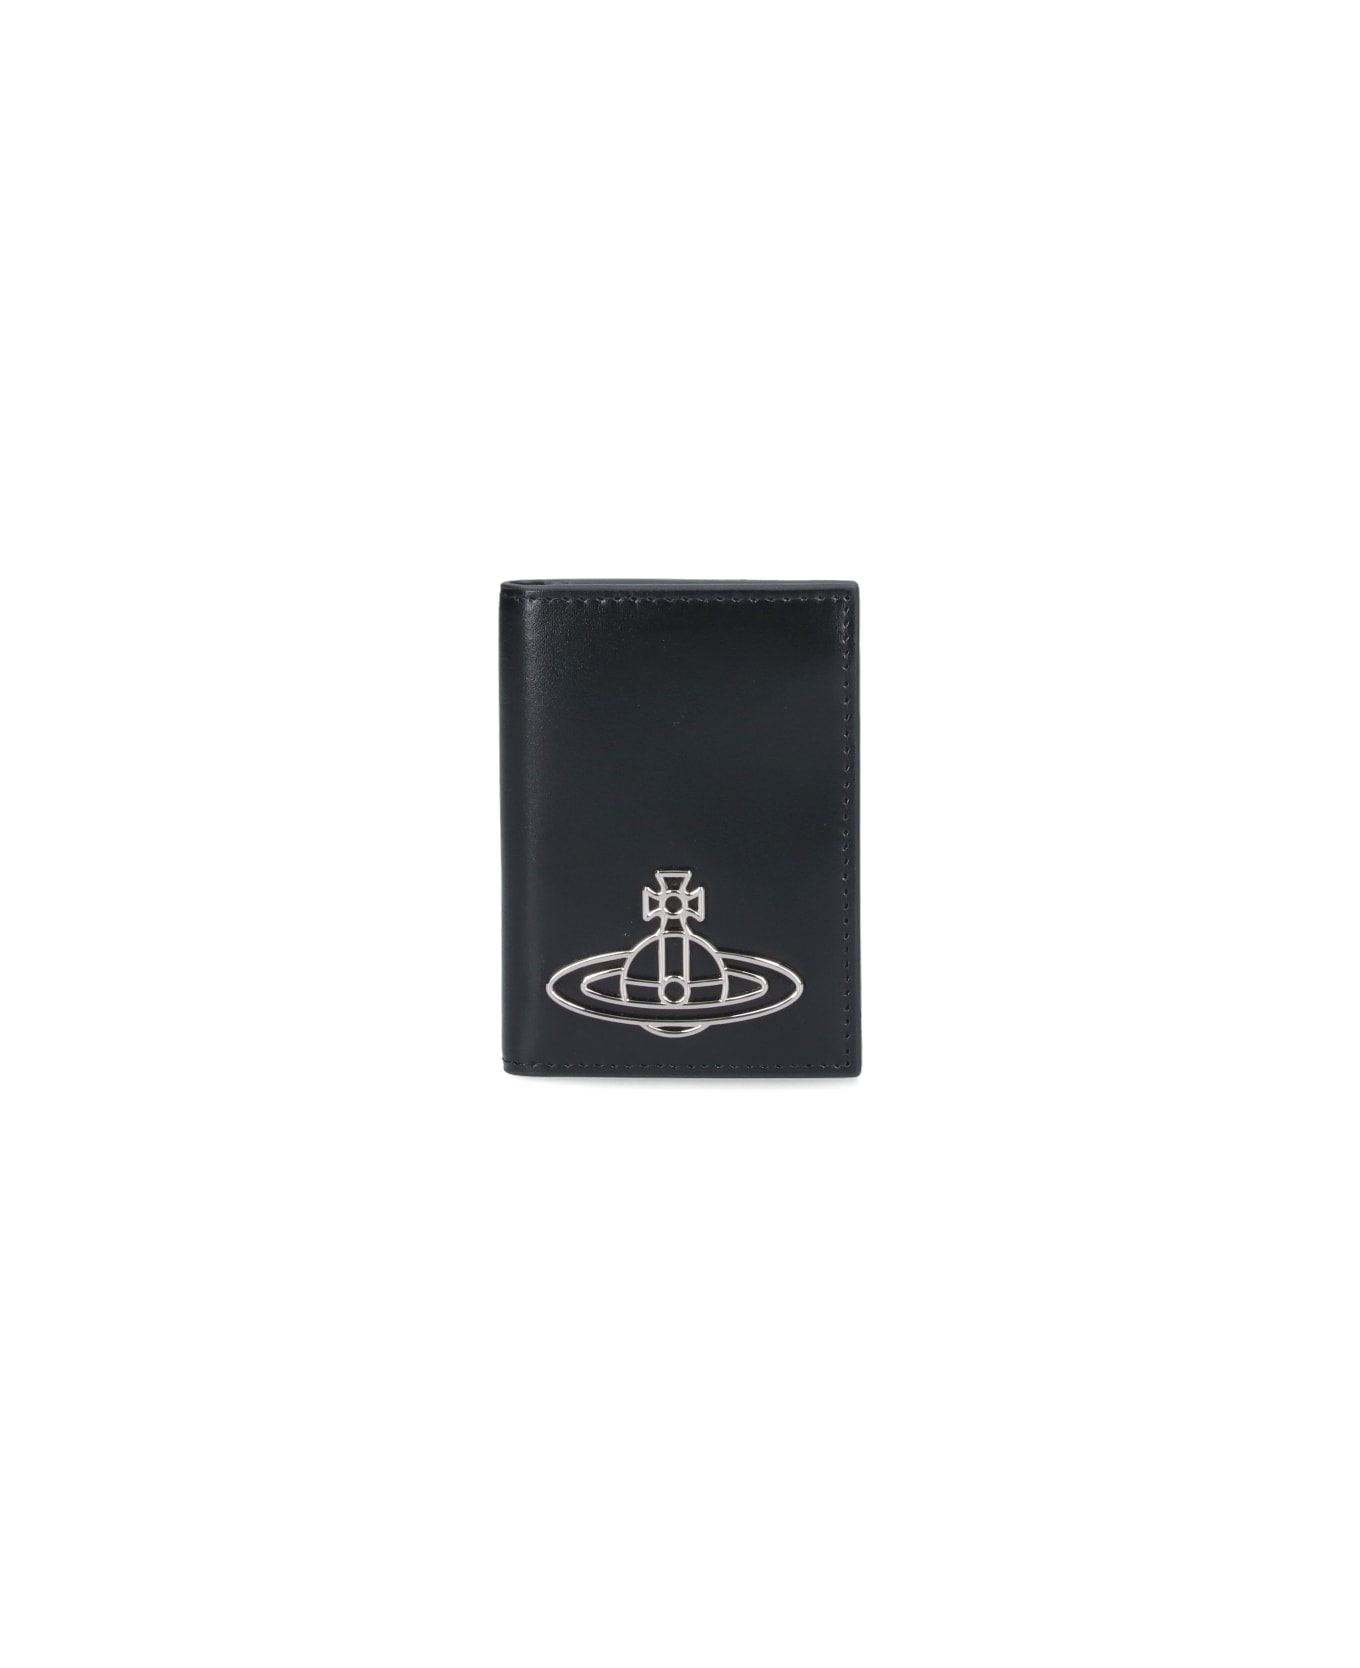 Vivienne Westwood Logo Card Holder - Black   財布